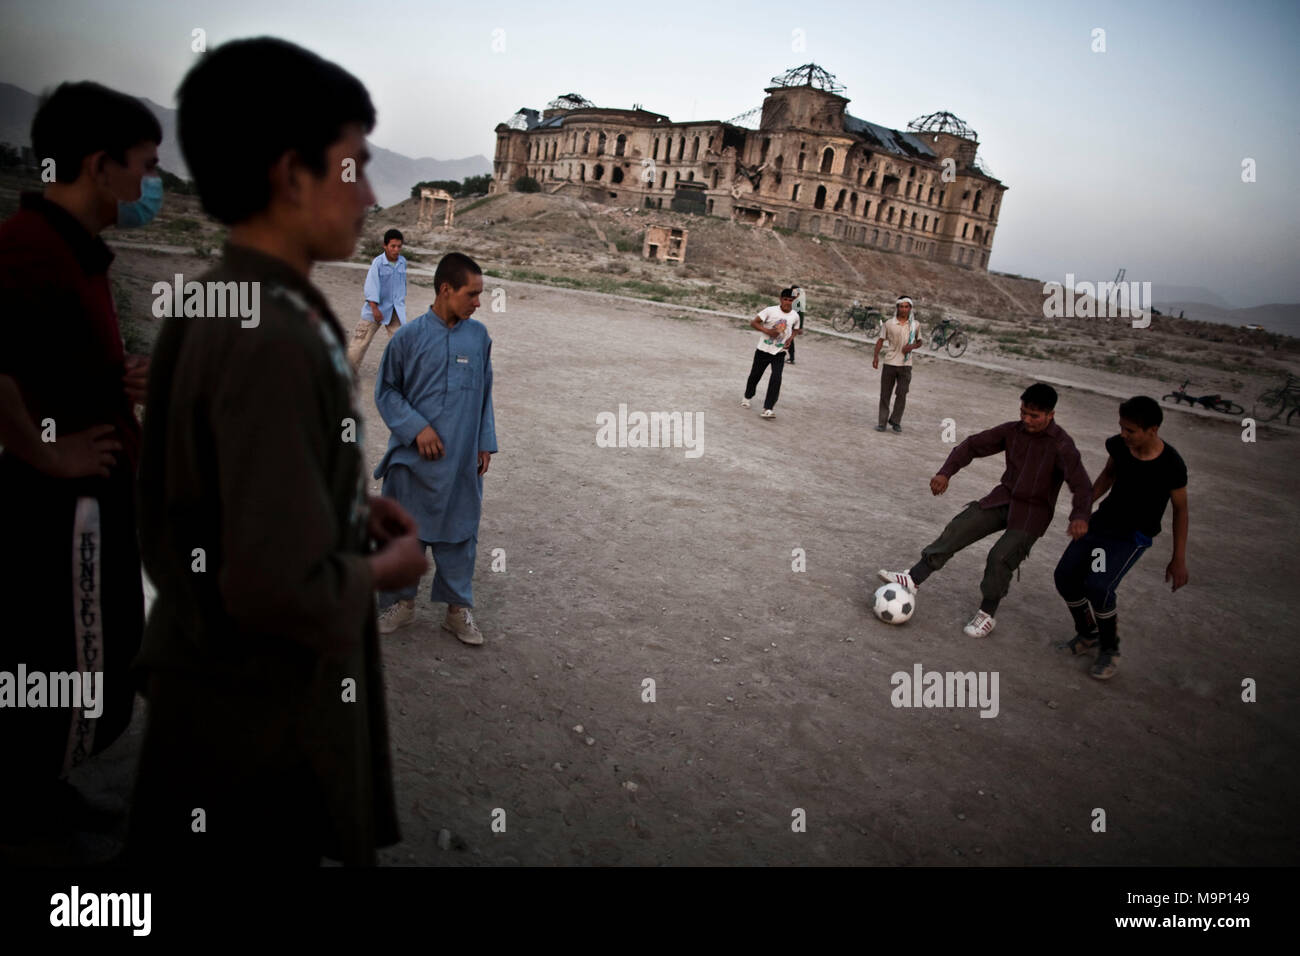 Afghan ragazzi giocare a calcio come ha bombardato il Darul Aman Palace che sta per "dimora di pace", distrutto durante la guerra civile a Kabul, Afghanistan, mercoledì 15 luglio, 2009. Foto Stock